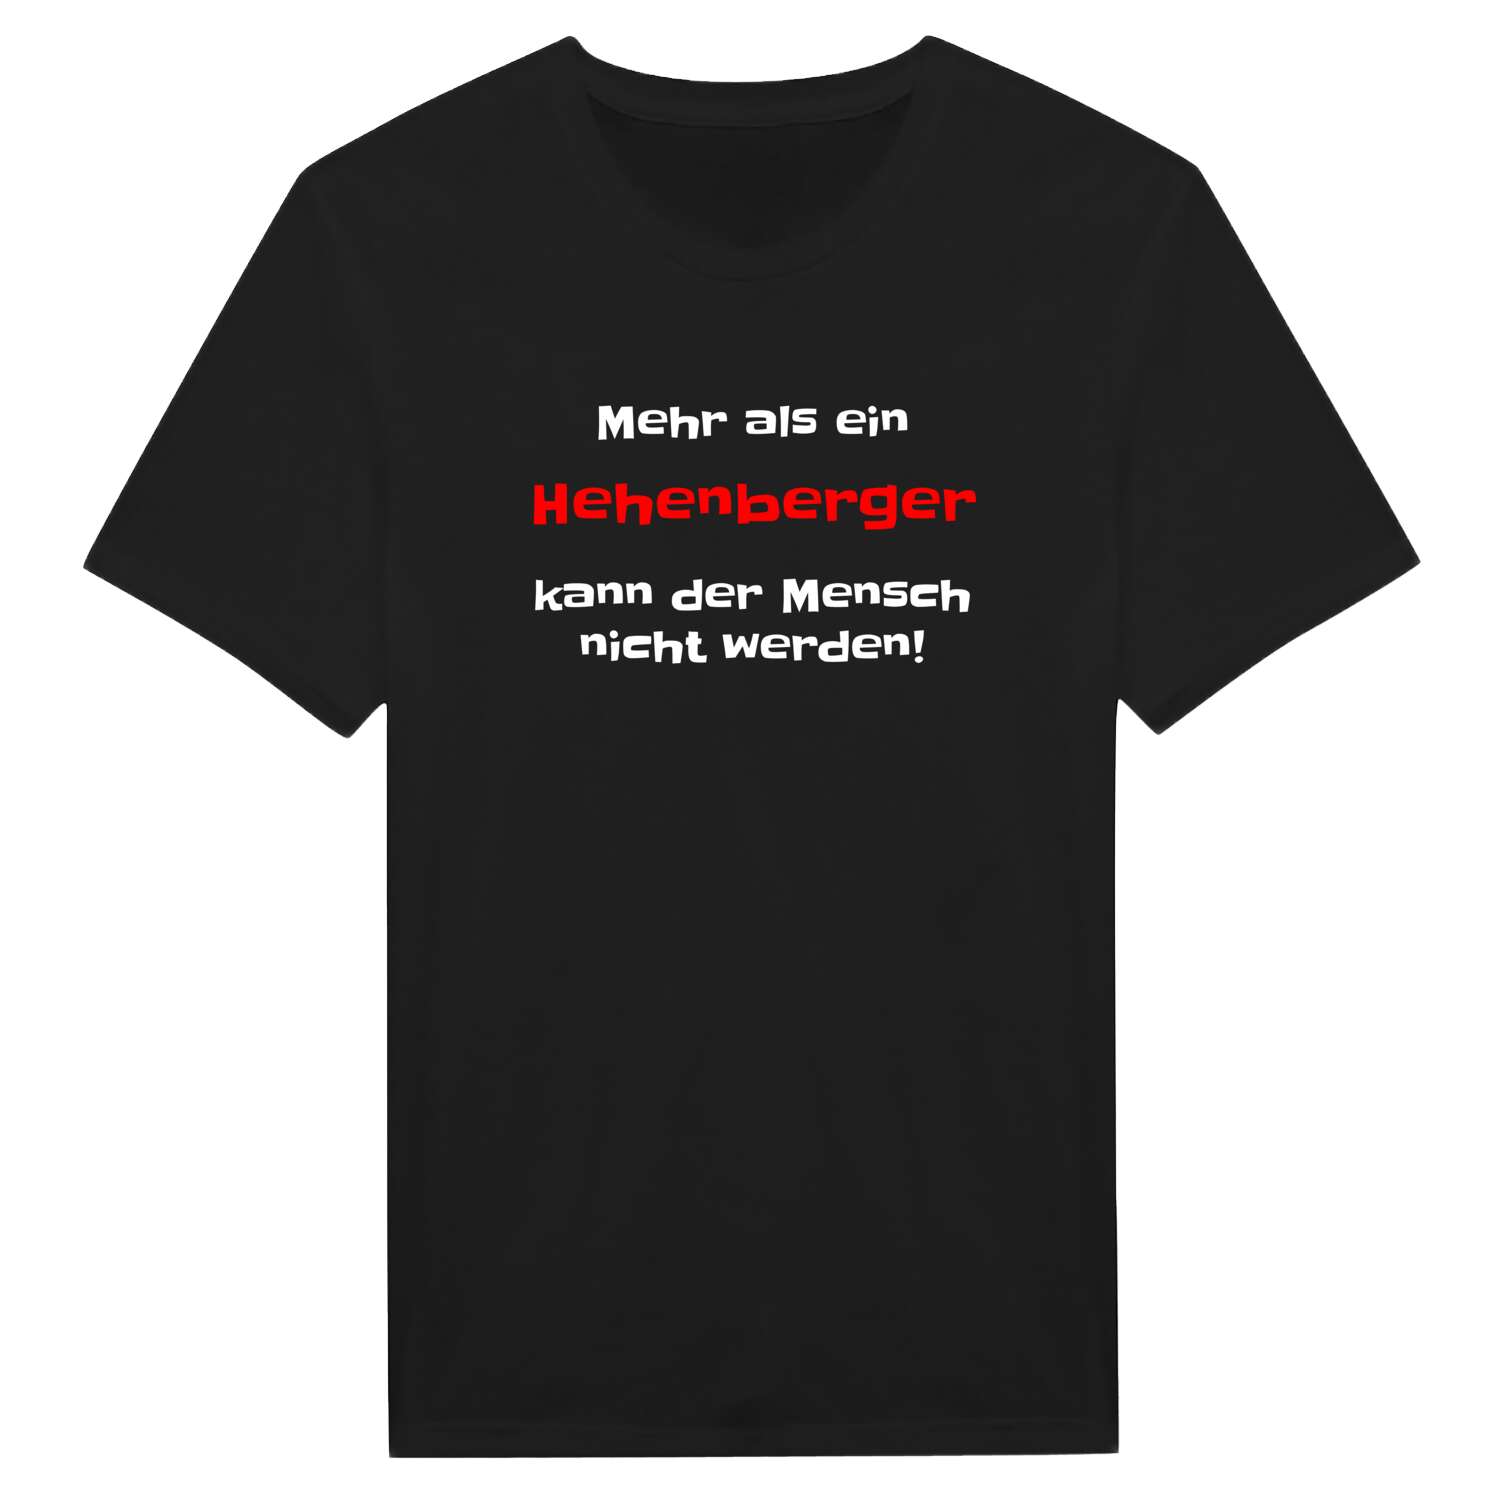 Hehenberg T-Shirt »Mehr als ein«